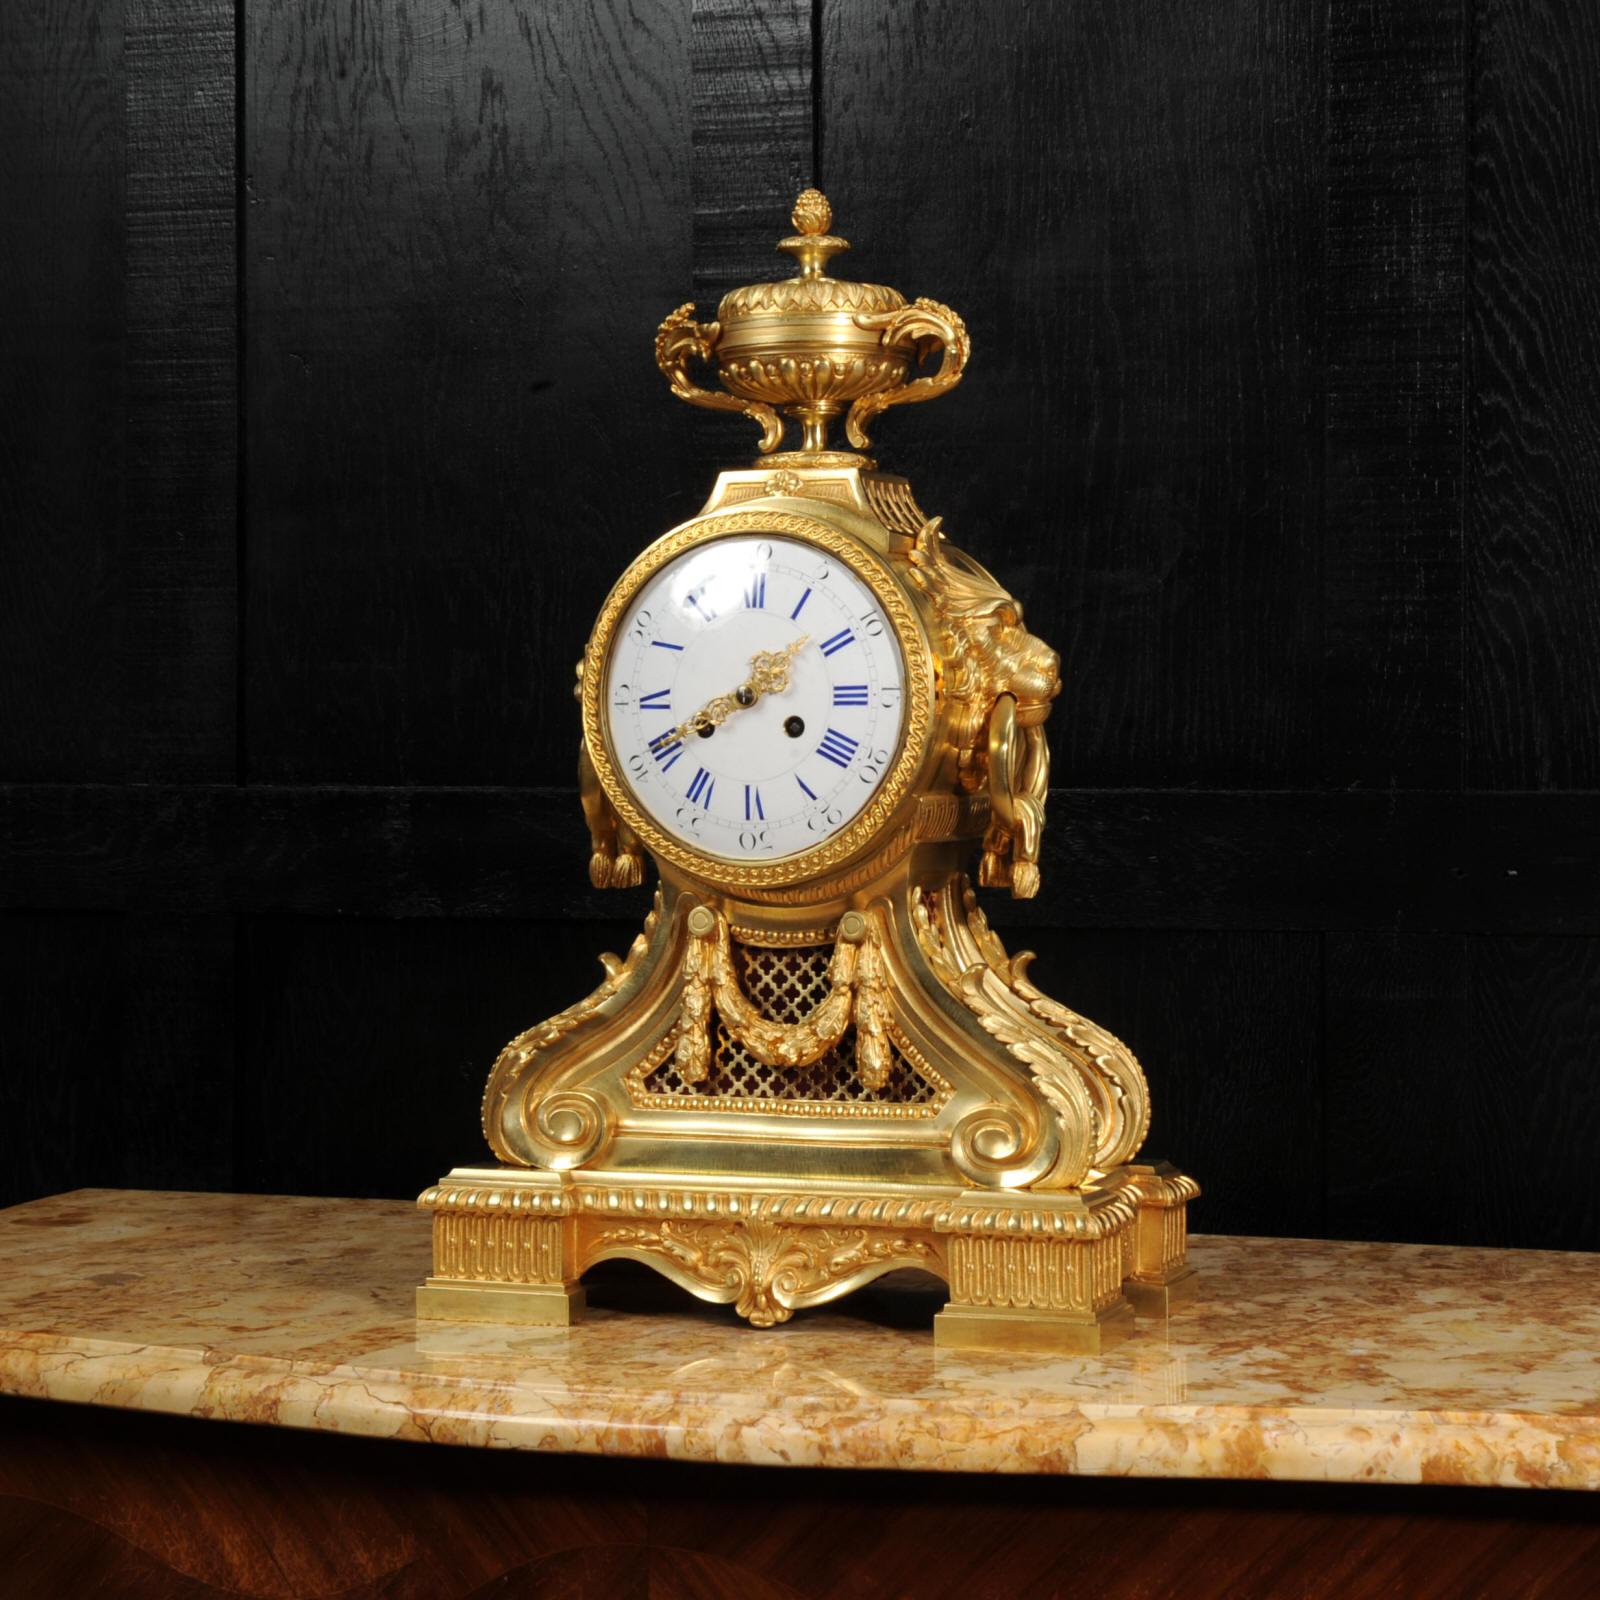 Eine große und beeindruckende original antike französische Trommelkopfuhr. Sie ist aus fein vergoldeter Bronze gefertigt und hat ein neoklassizistisches Design. Das Uhrwerk ist in einer großen Trommel mit prächtigen Löwenmaskengriffen und einer